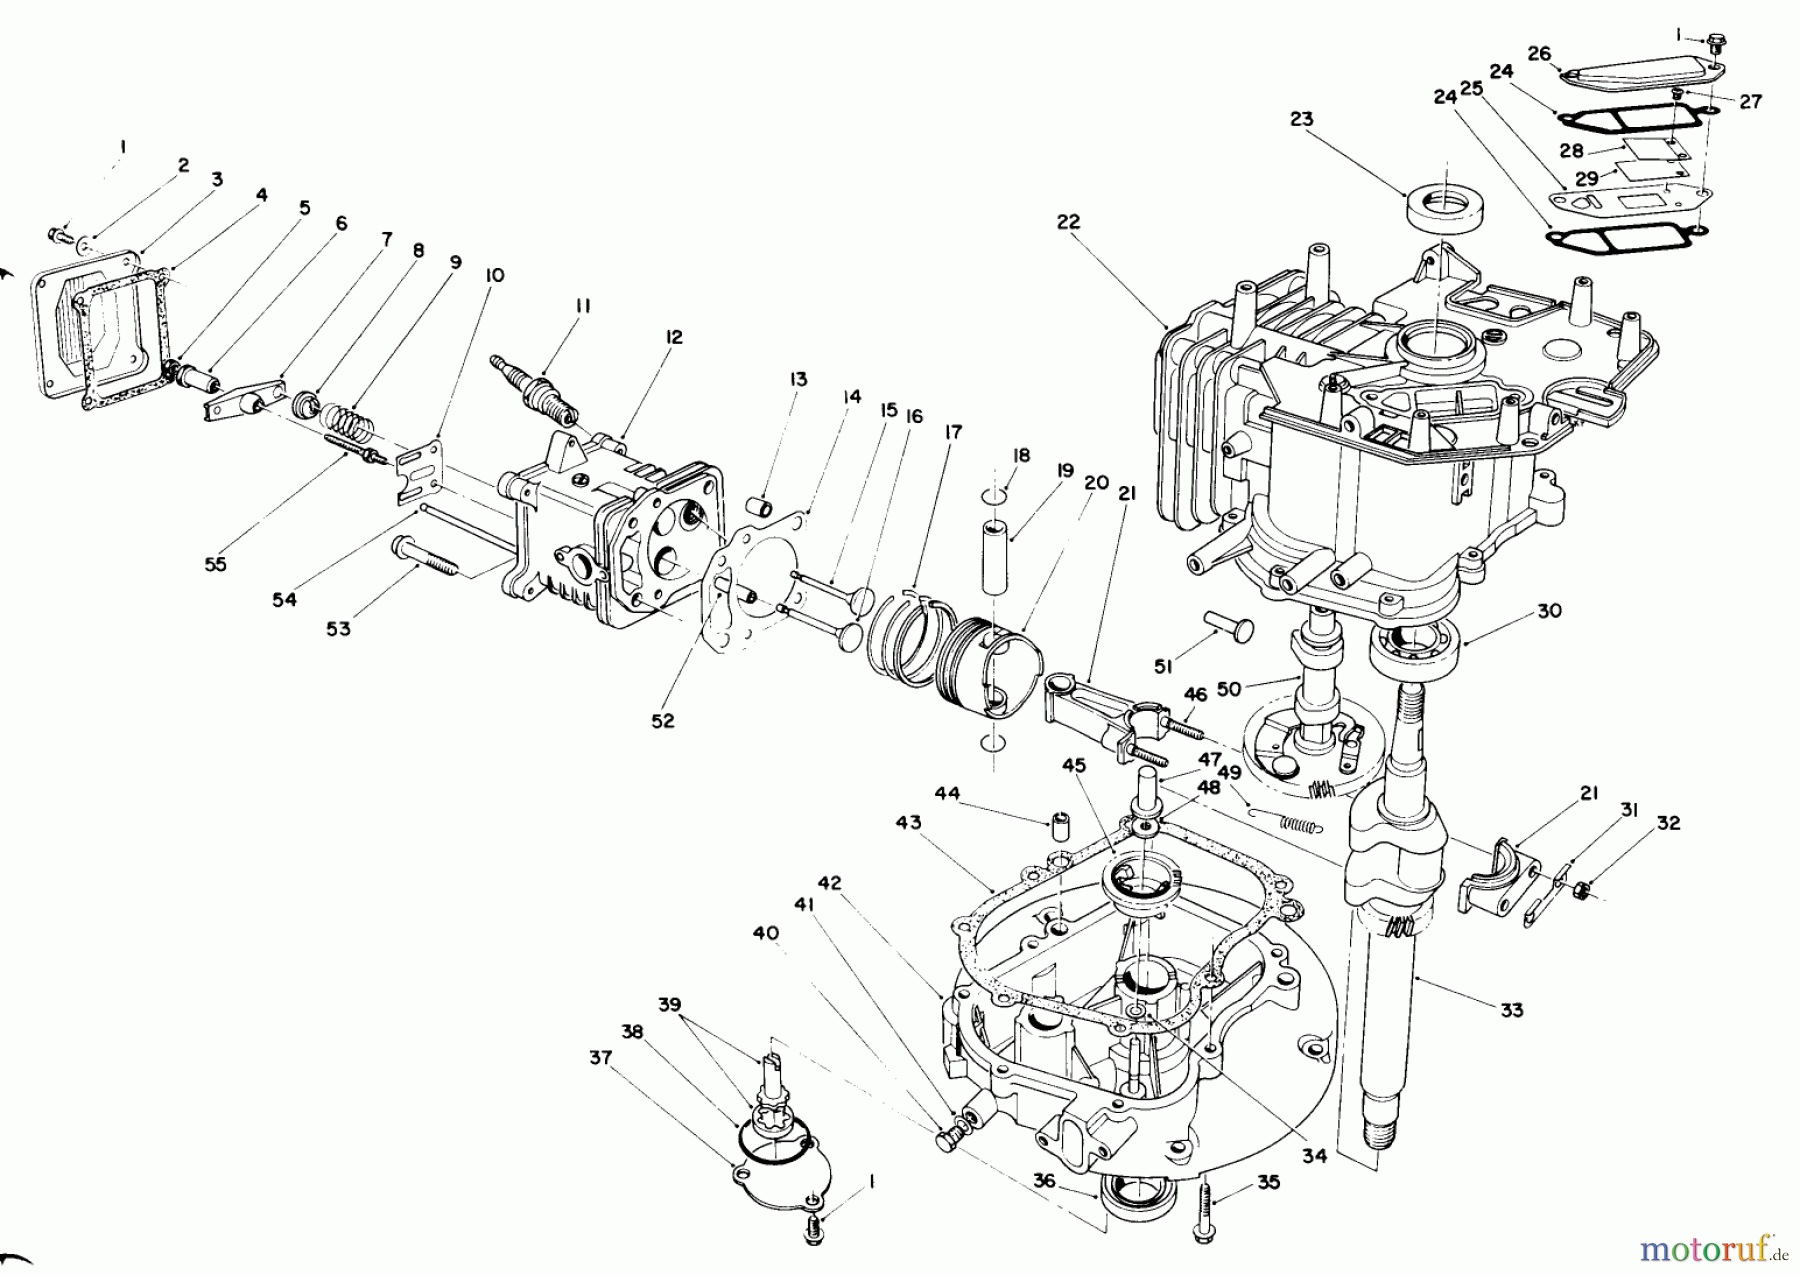  Toro Neu Mowers, Walk-Behind Seite 1 20219 - Toro Lawnmower, 1991 (1000001-1999999) ENGINE ASSEMBLY (MODEL NO. VML0-2)